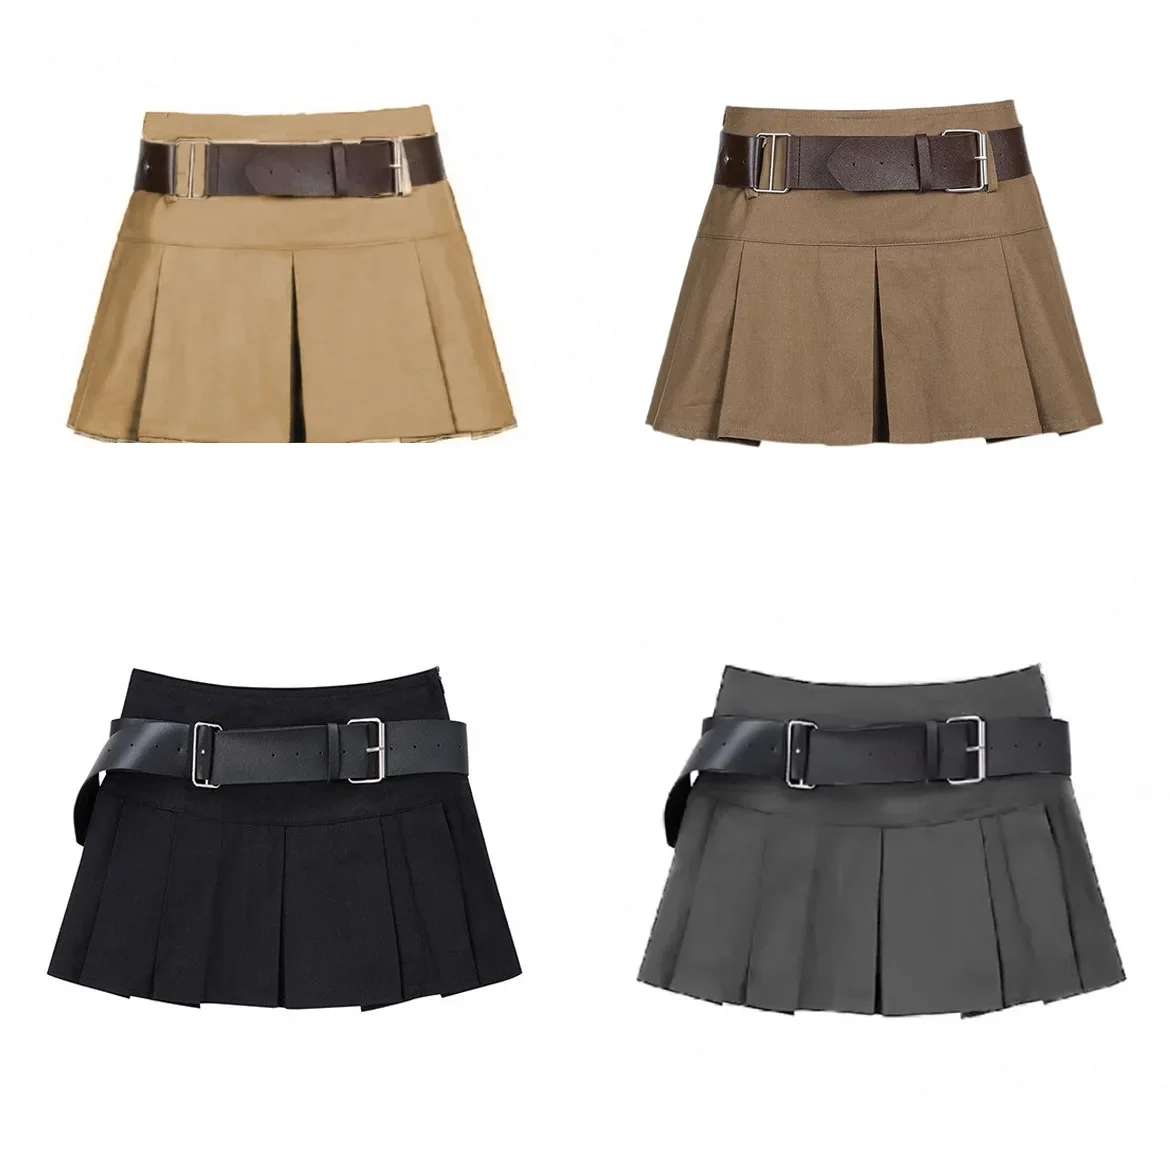 

Teenage Girls Pleated Skirt Solid Casual All-match Cargo Skirt for Kids Short A-line High Waist Tutu Skirt Children With Belt